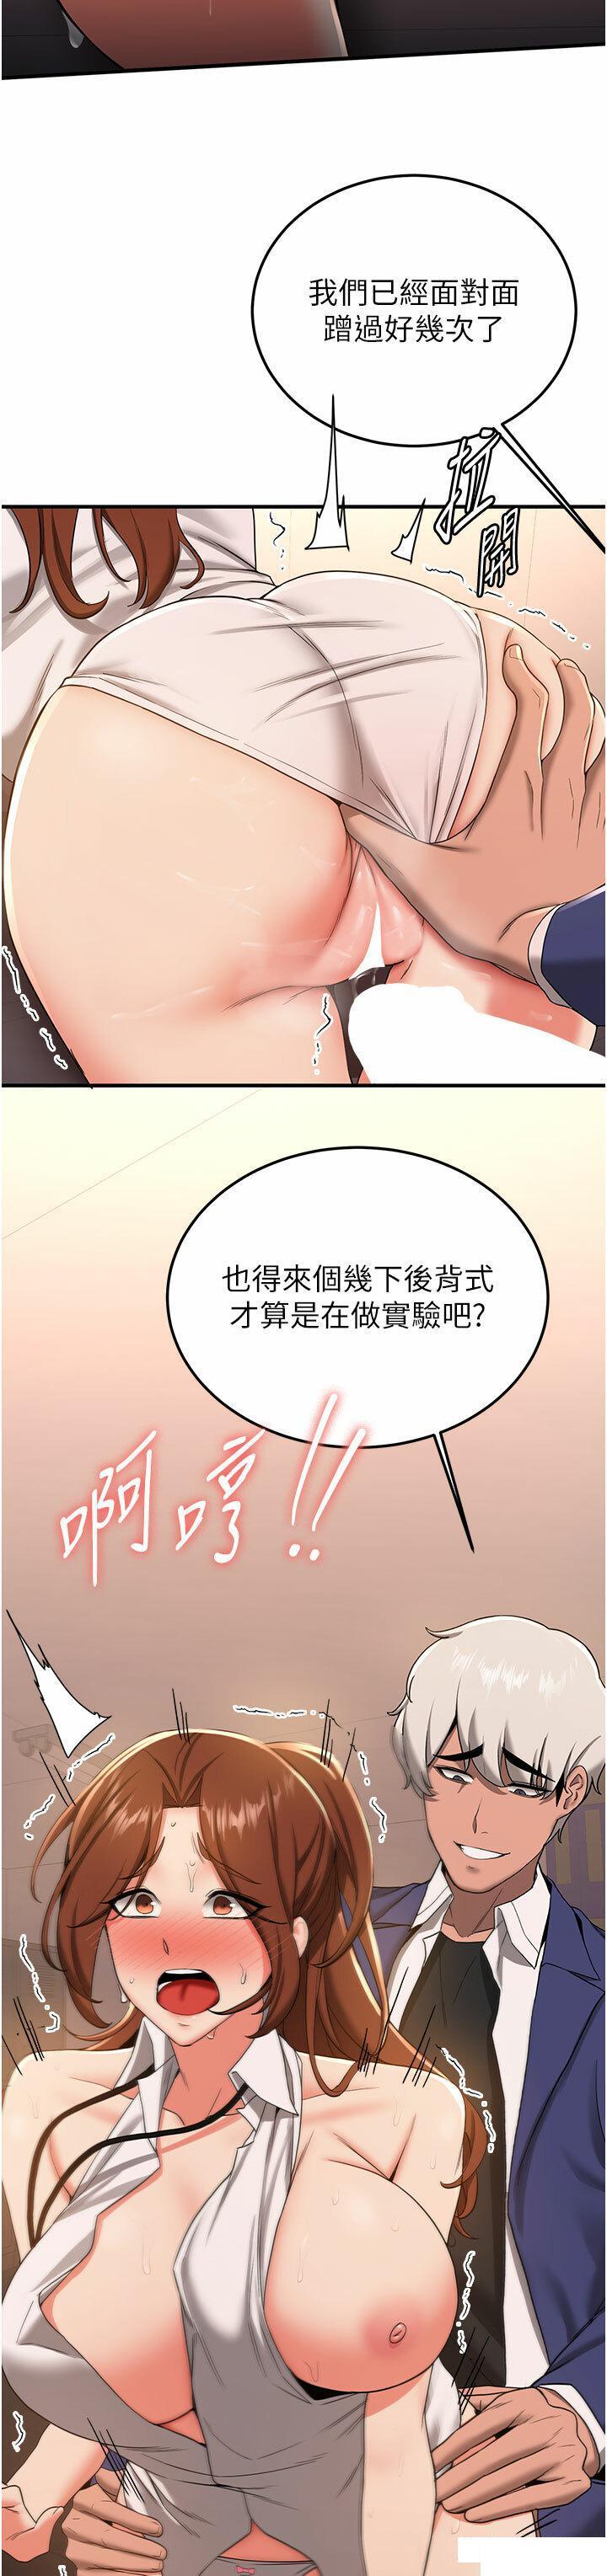 韩国污漫画 搶女友速成班 第20话_被后背式狂操的教官 23